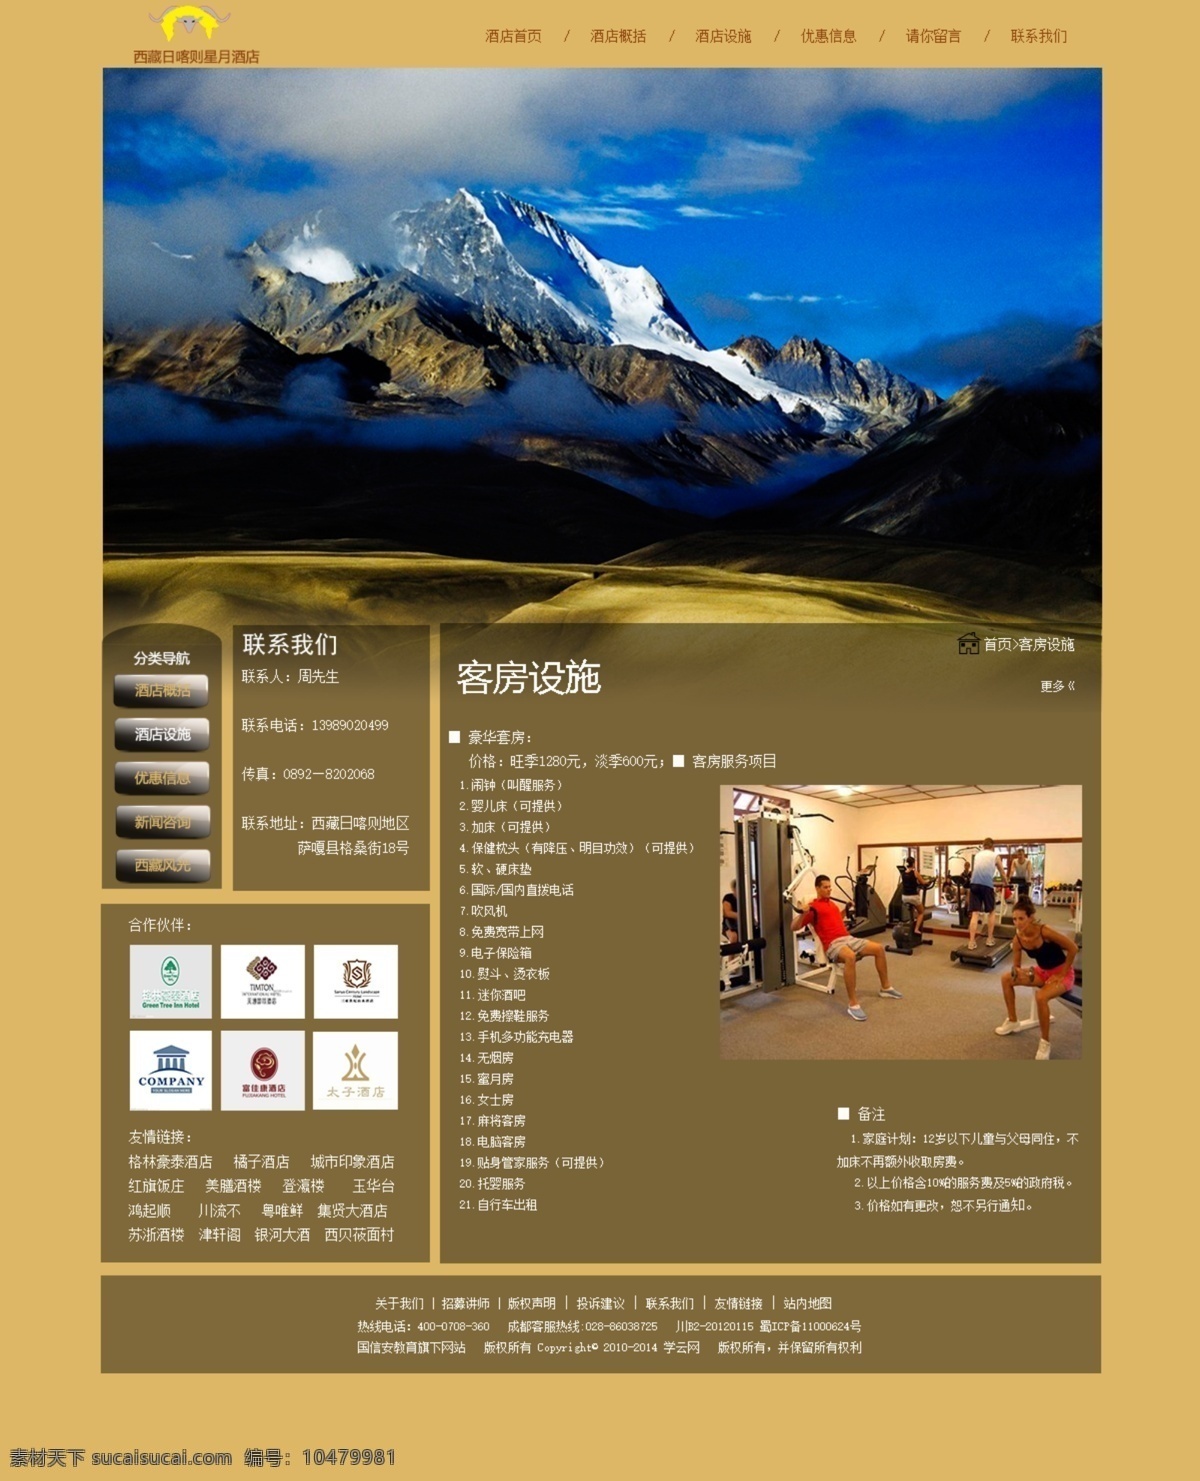 酒店 网站 客房 设施 页面 源文件 西藏酒店网站 界面 客房设施 原创设计 原创网页设计